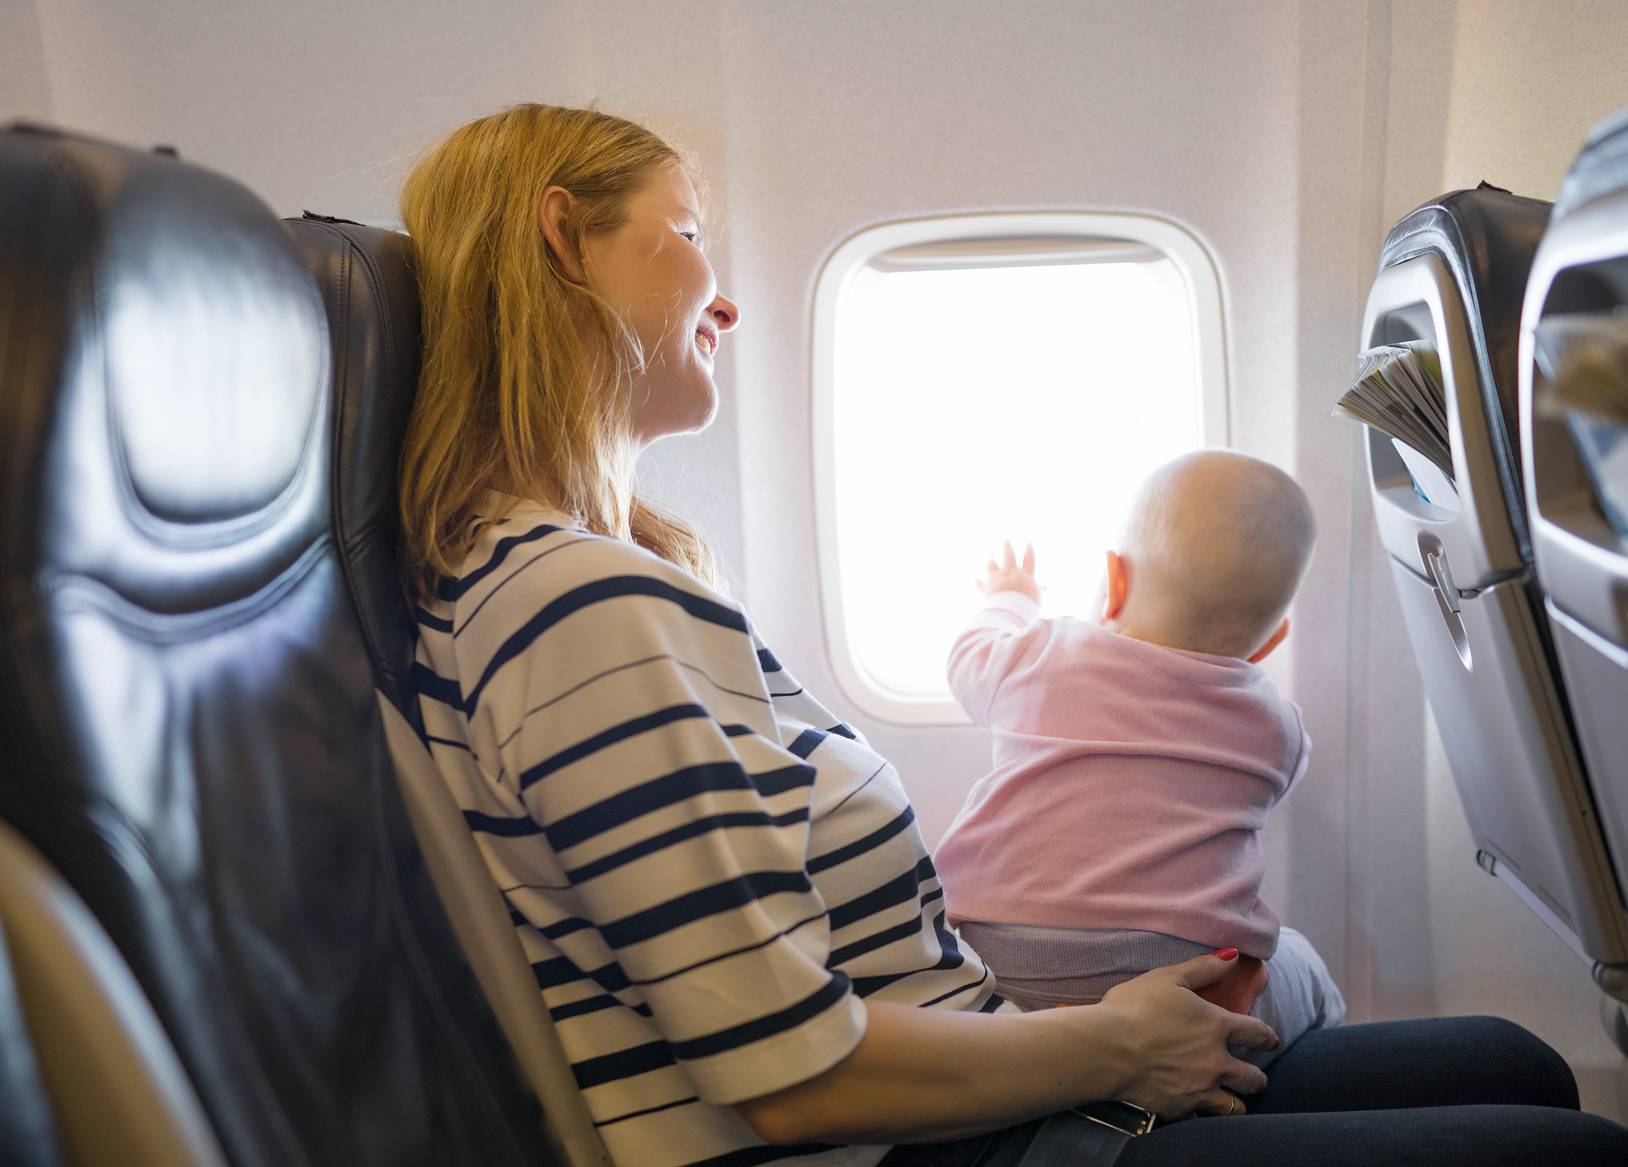 В правила перелётов внесены изменения для пассажиров с малолетними детьми в самолетах.